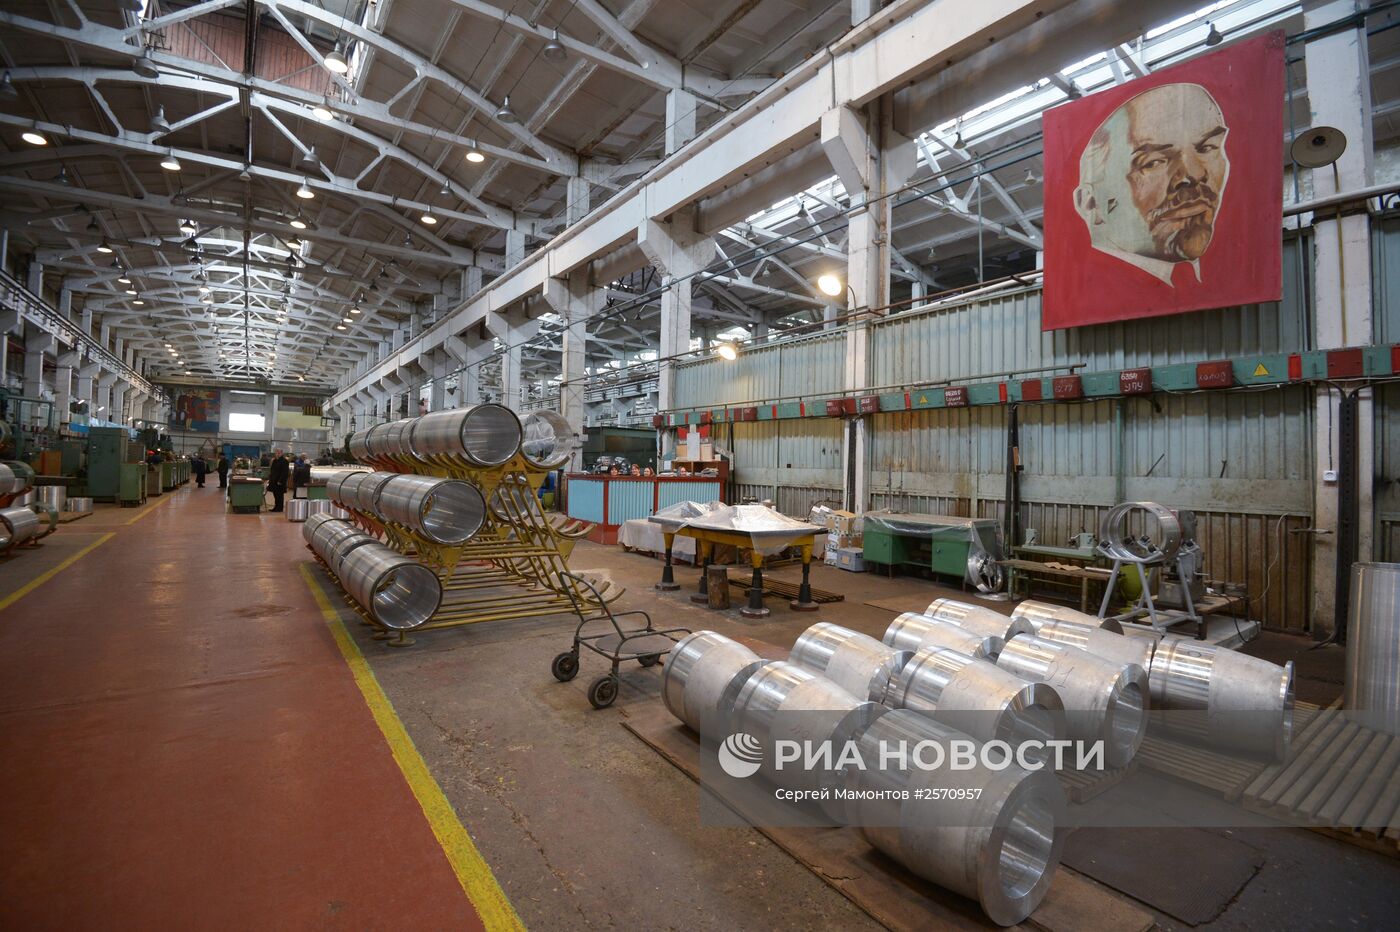 Д.Рогозин посетил завод "Дагдизель"